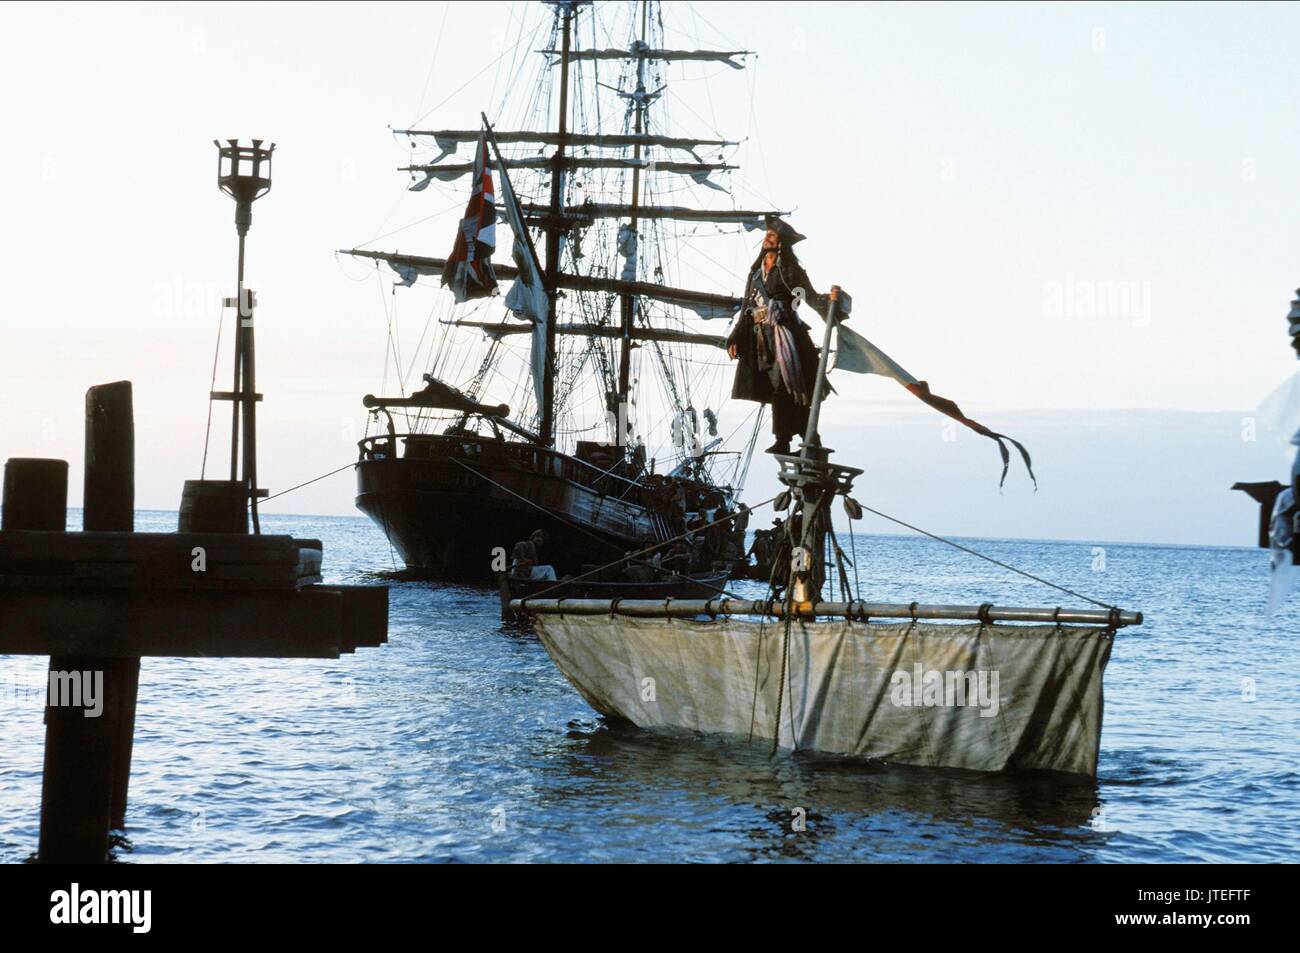 Pirate Ship Caribbean Stock Photos & Pirate Ship Caribbean Stock Images ...